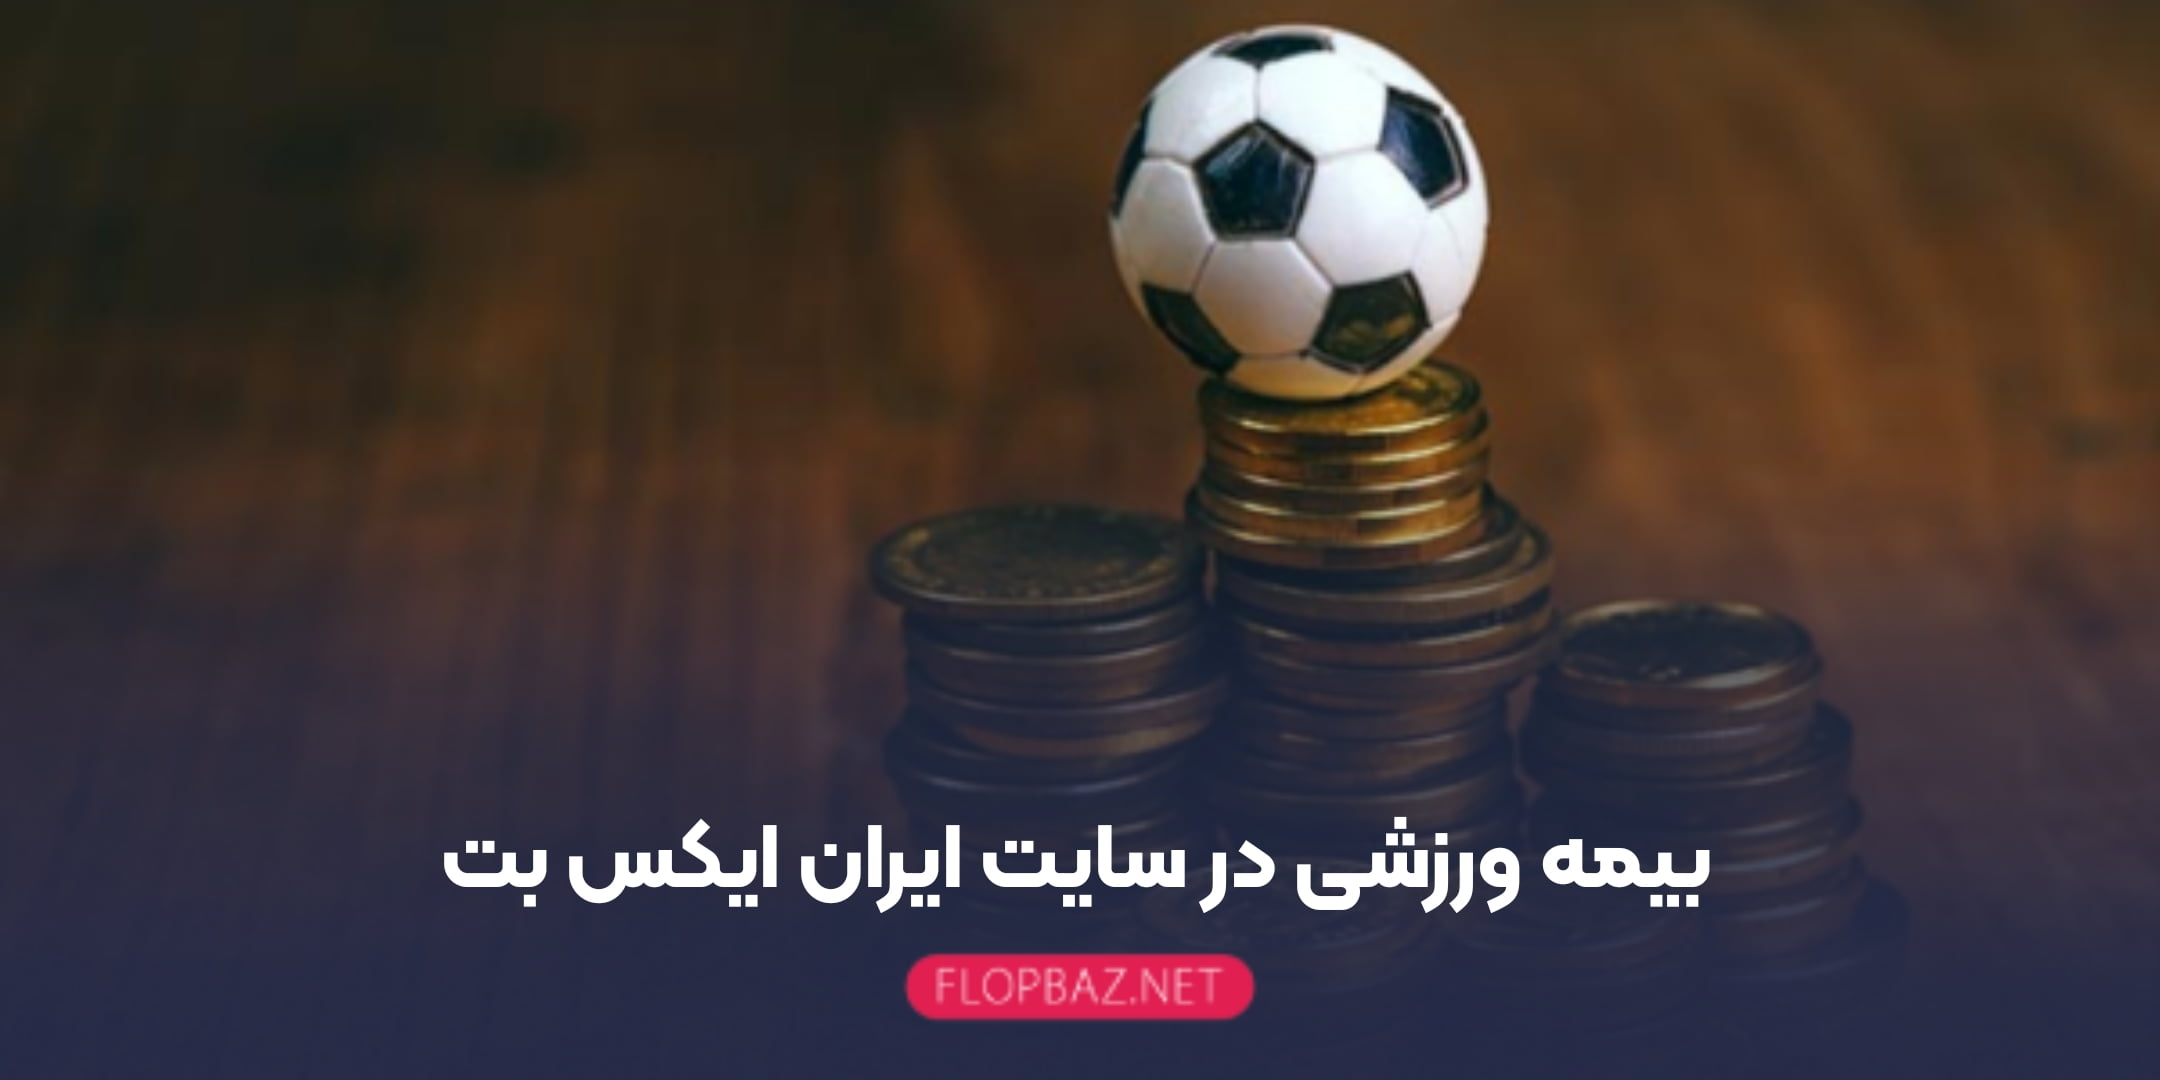 بیمه ورزشی در سایت ایران ایکس بت